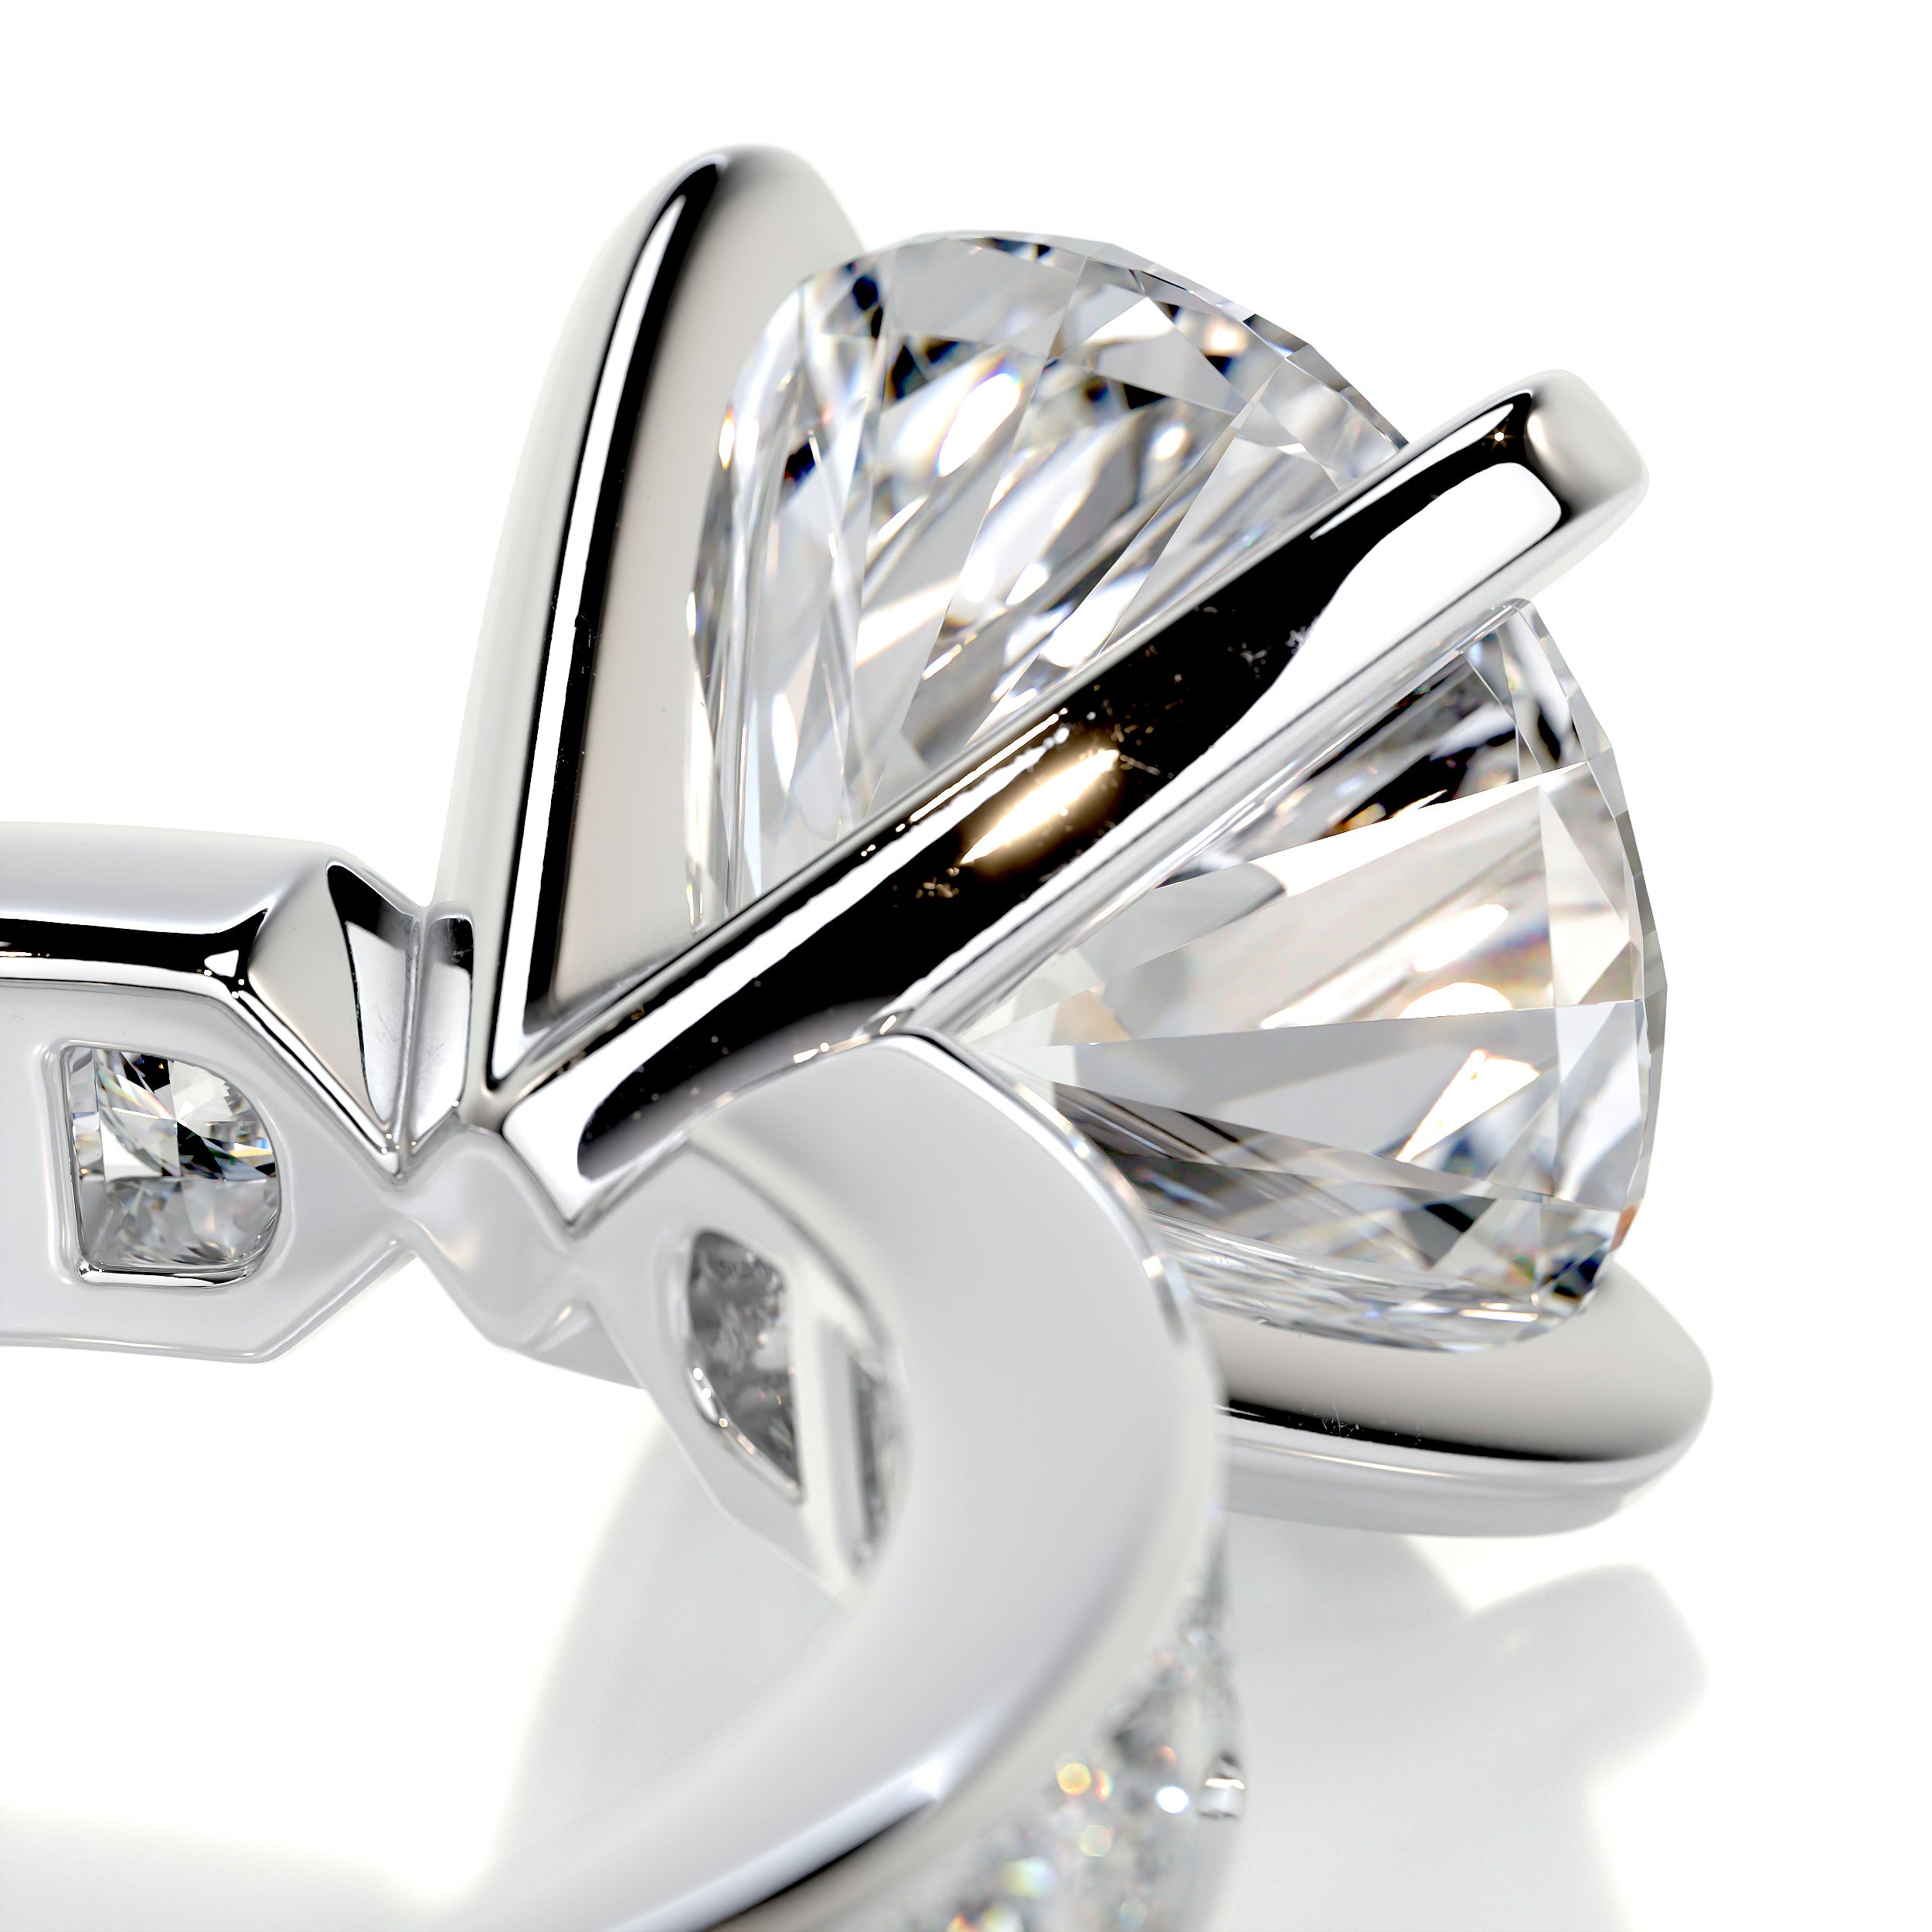 Giselle Diamond Engagement Ring   (3.50 Carat) -18K White Gold